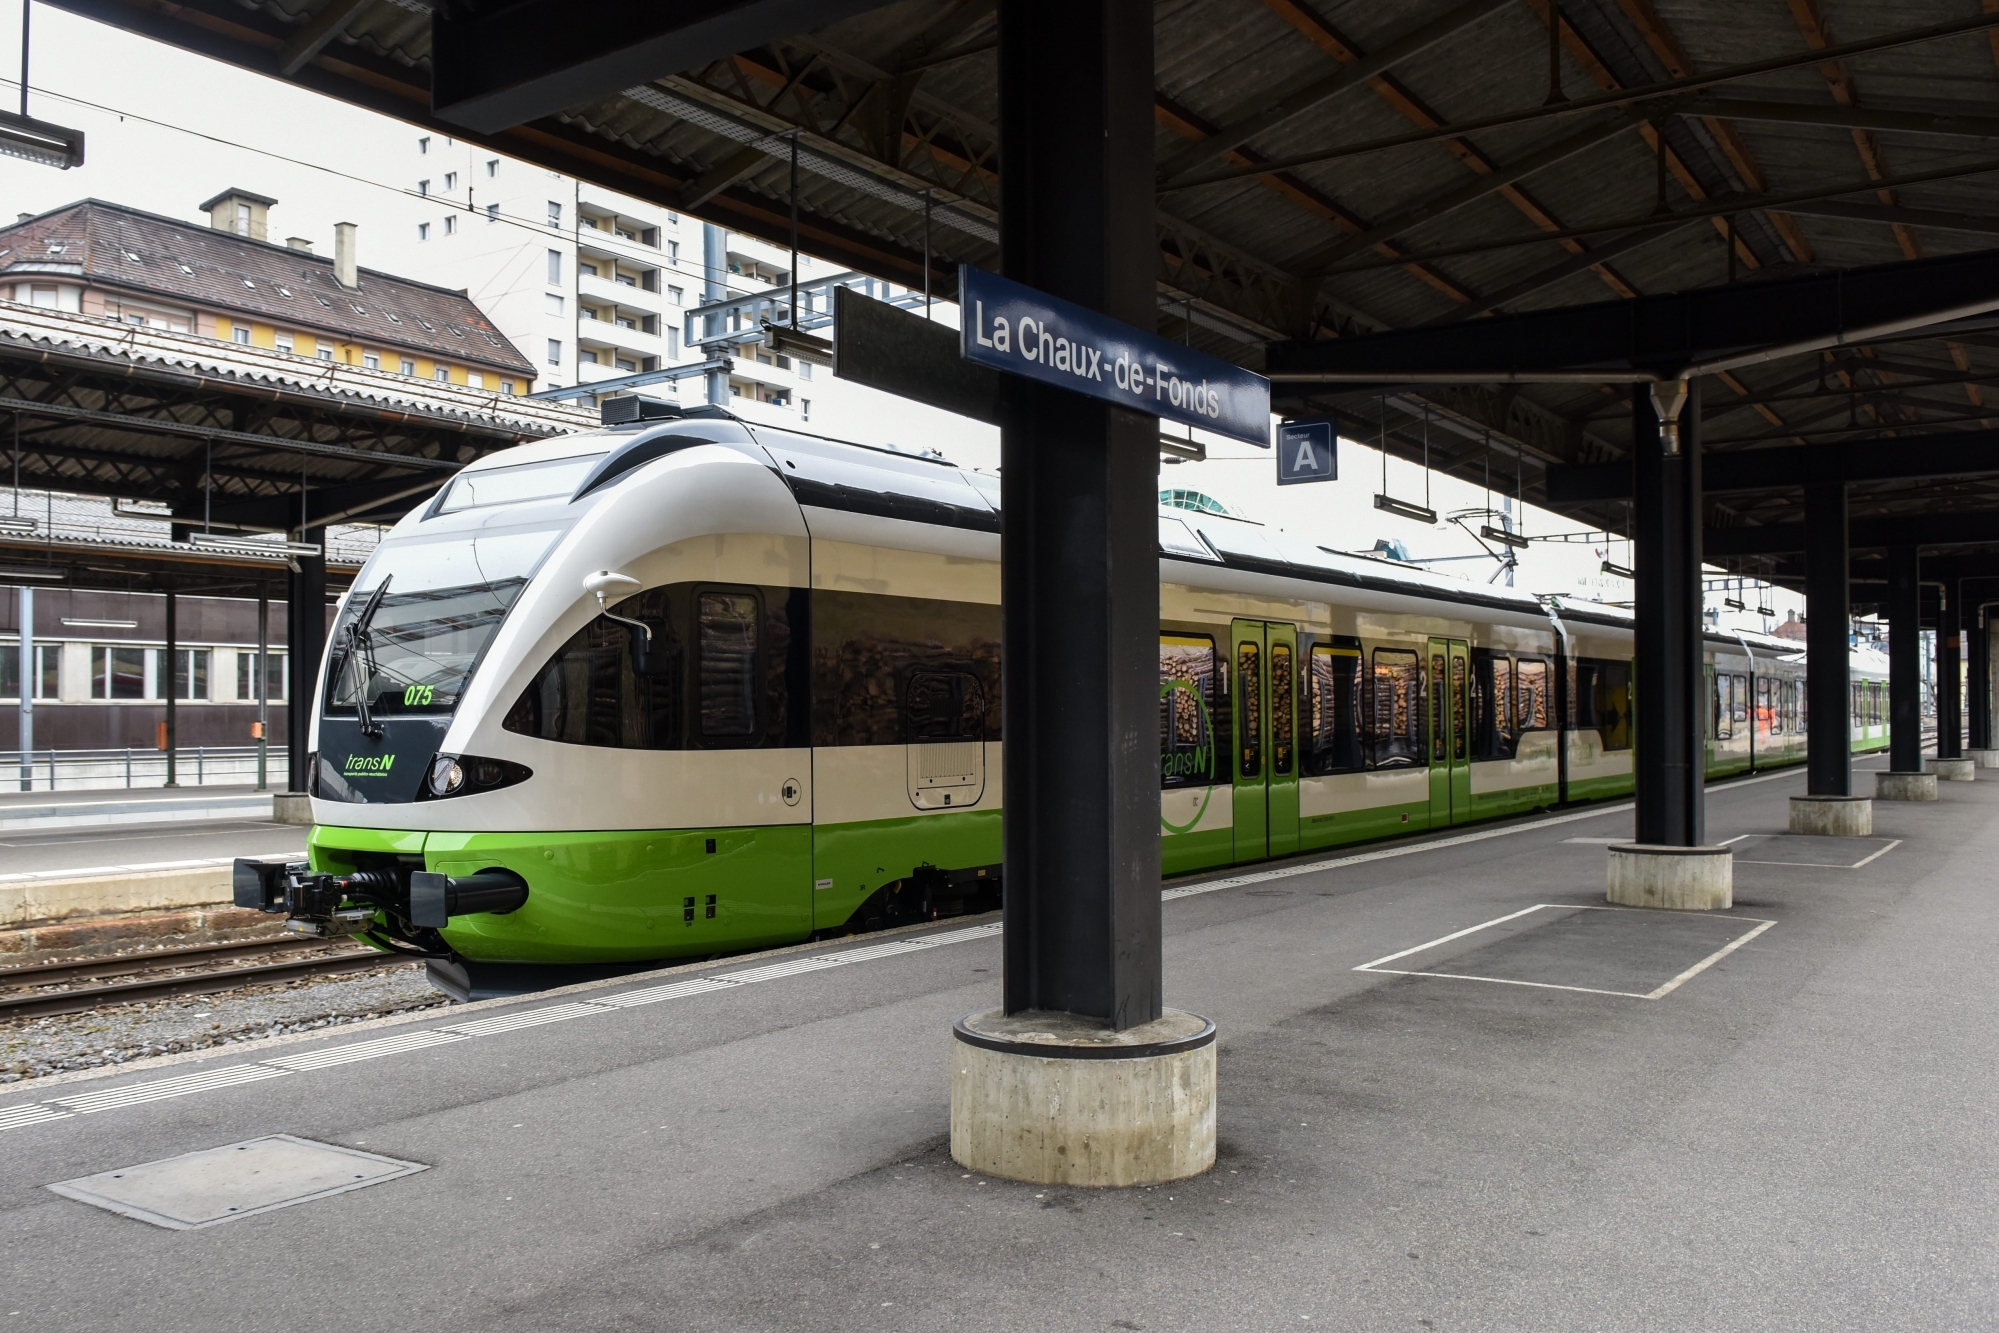 Les trains ne circuleront plus entre les gares de Neuchâtel et La Chaux-de-Fonds (photo) dès le 1er mars prochain. Celles-ci seront aussi en travaux.